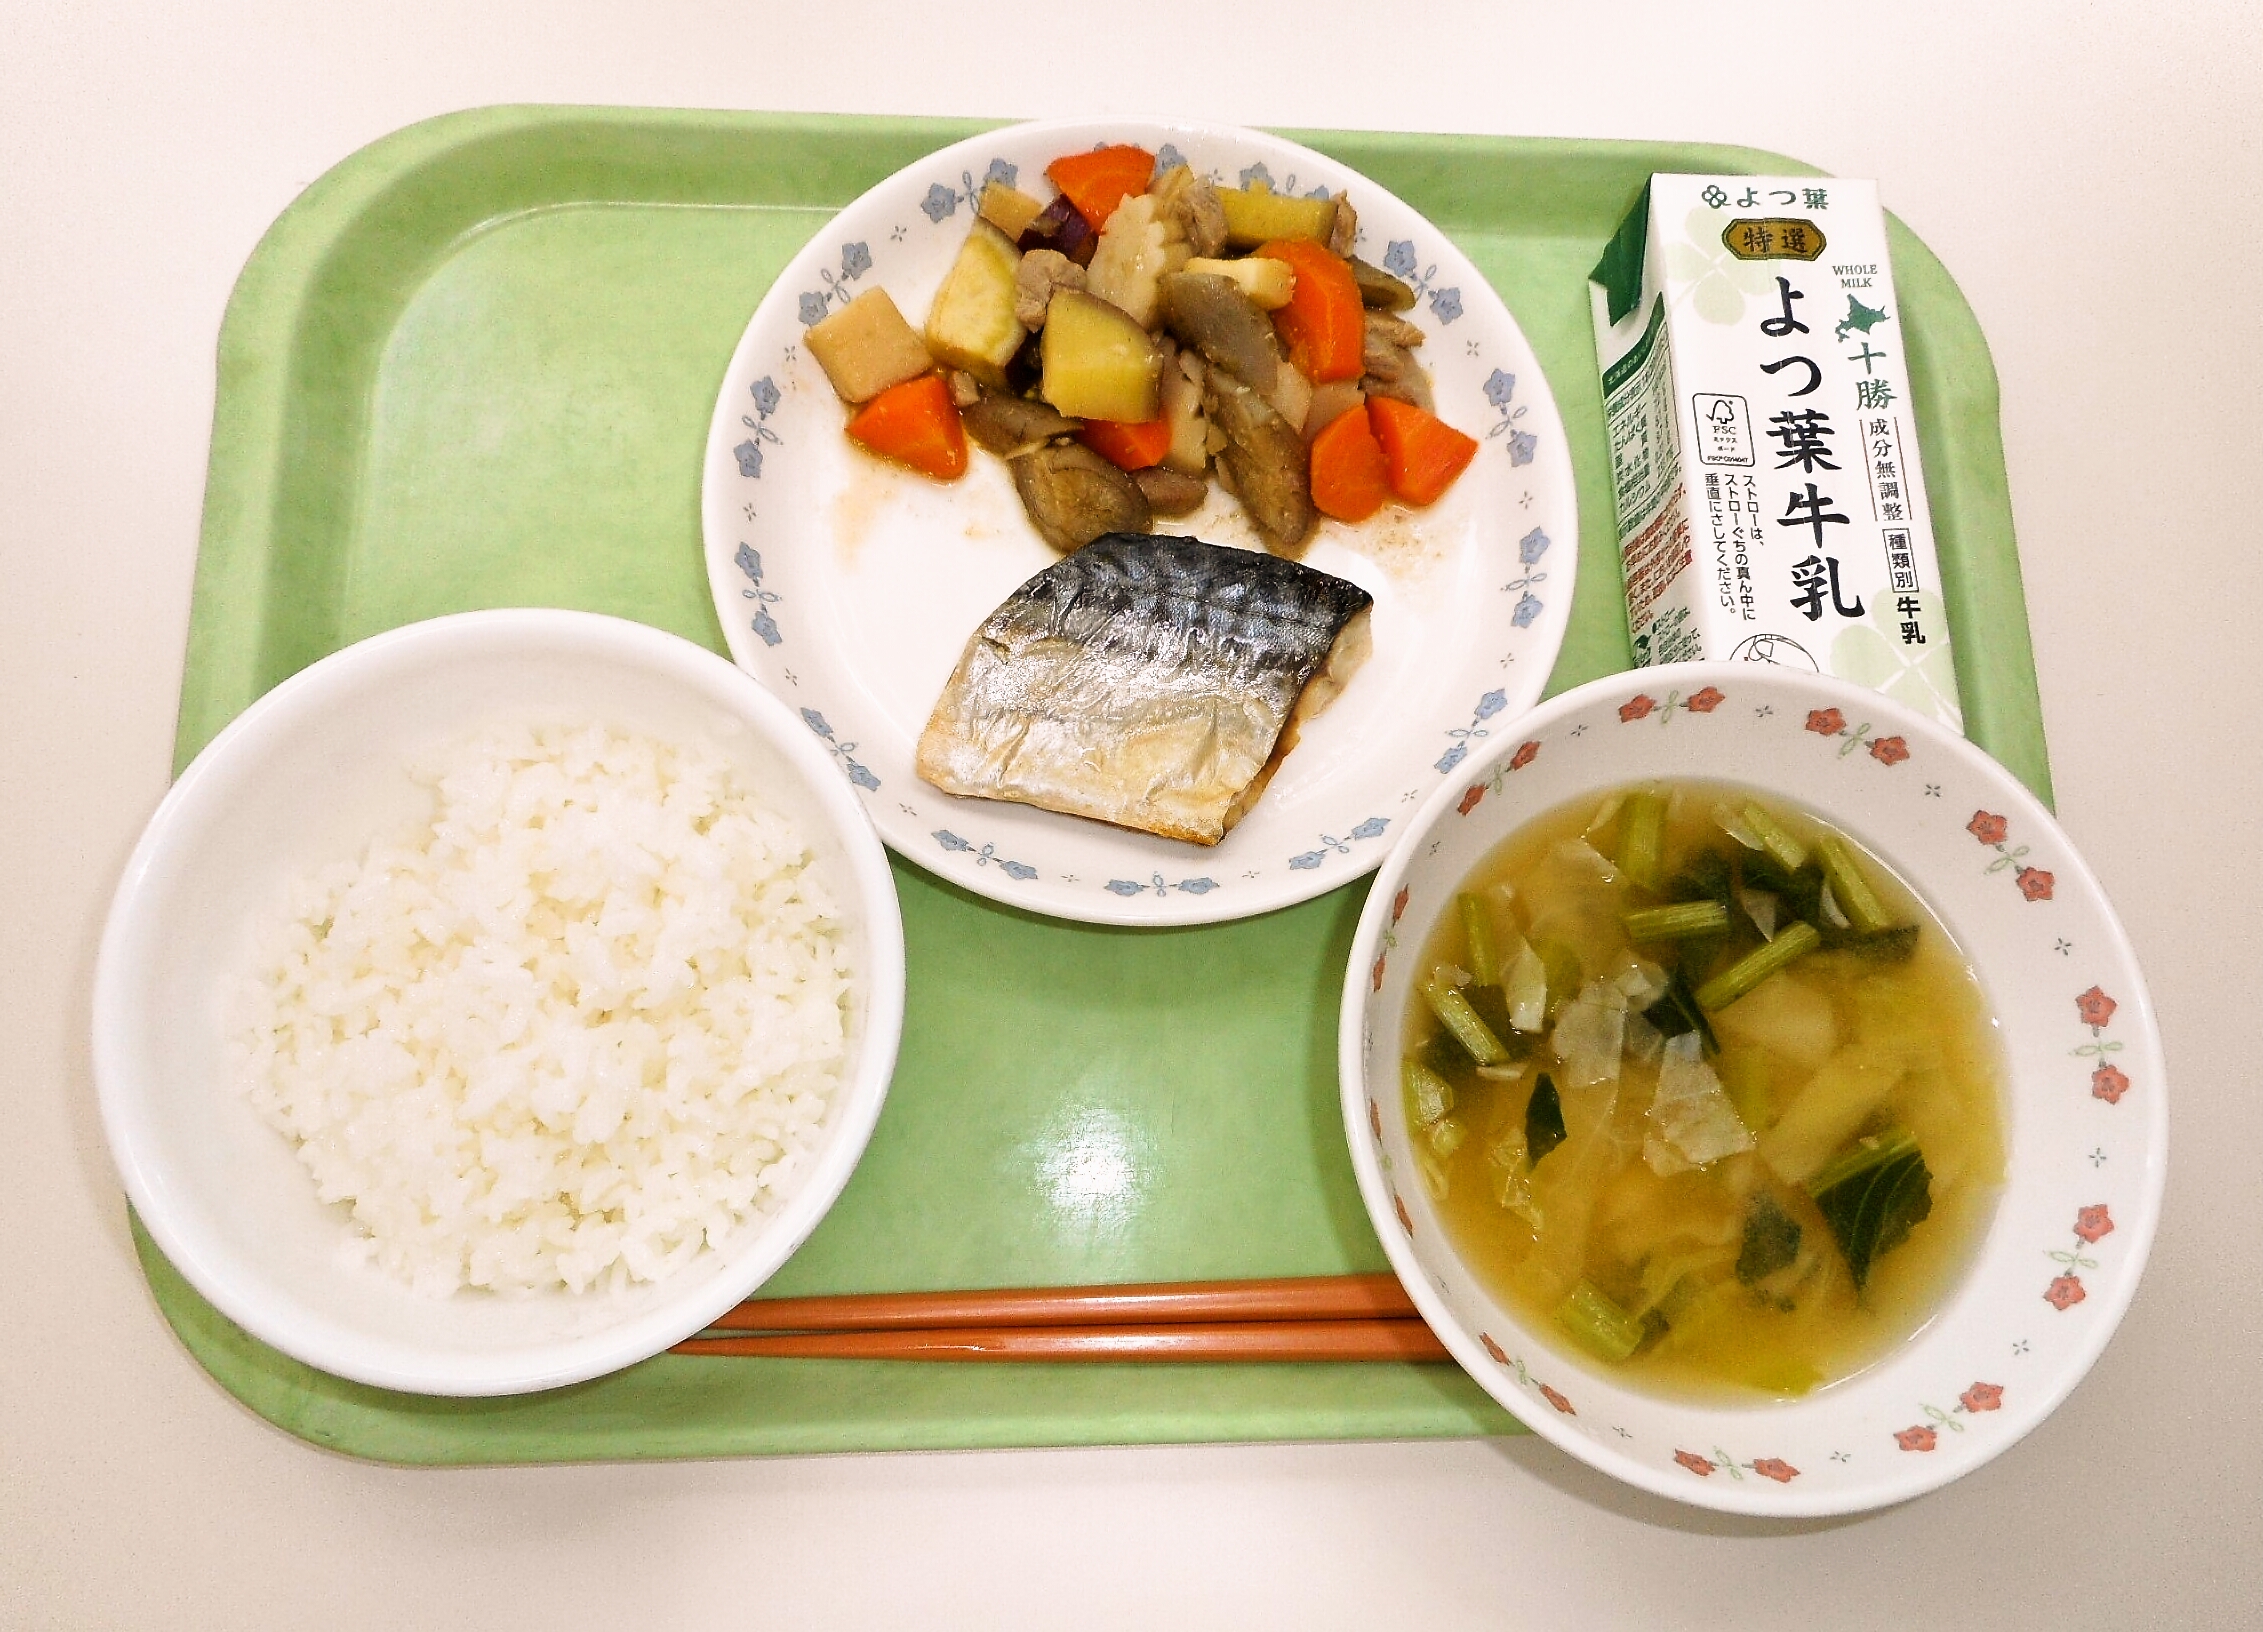 ごはん、みそ汁（きゃべつ・小松菜）、鯖の塩焼き、五目うま煮、牛乳